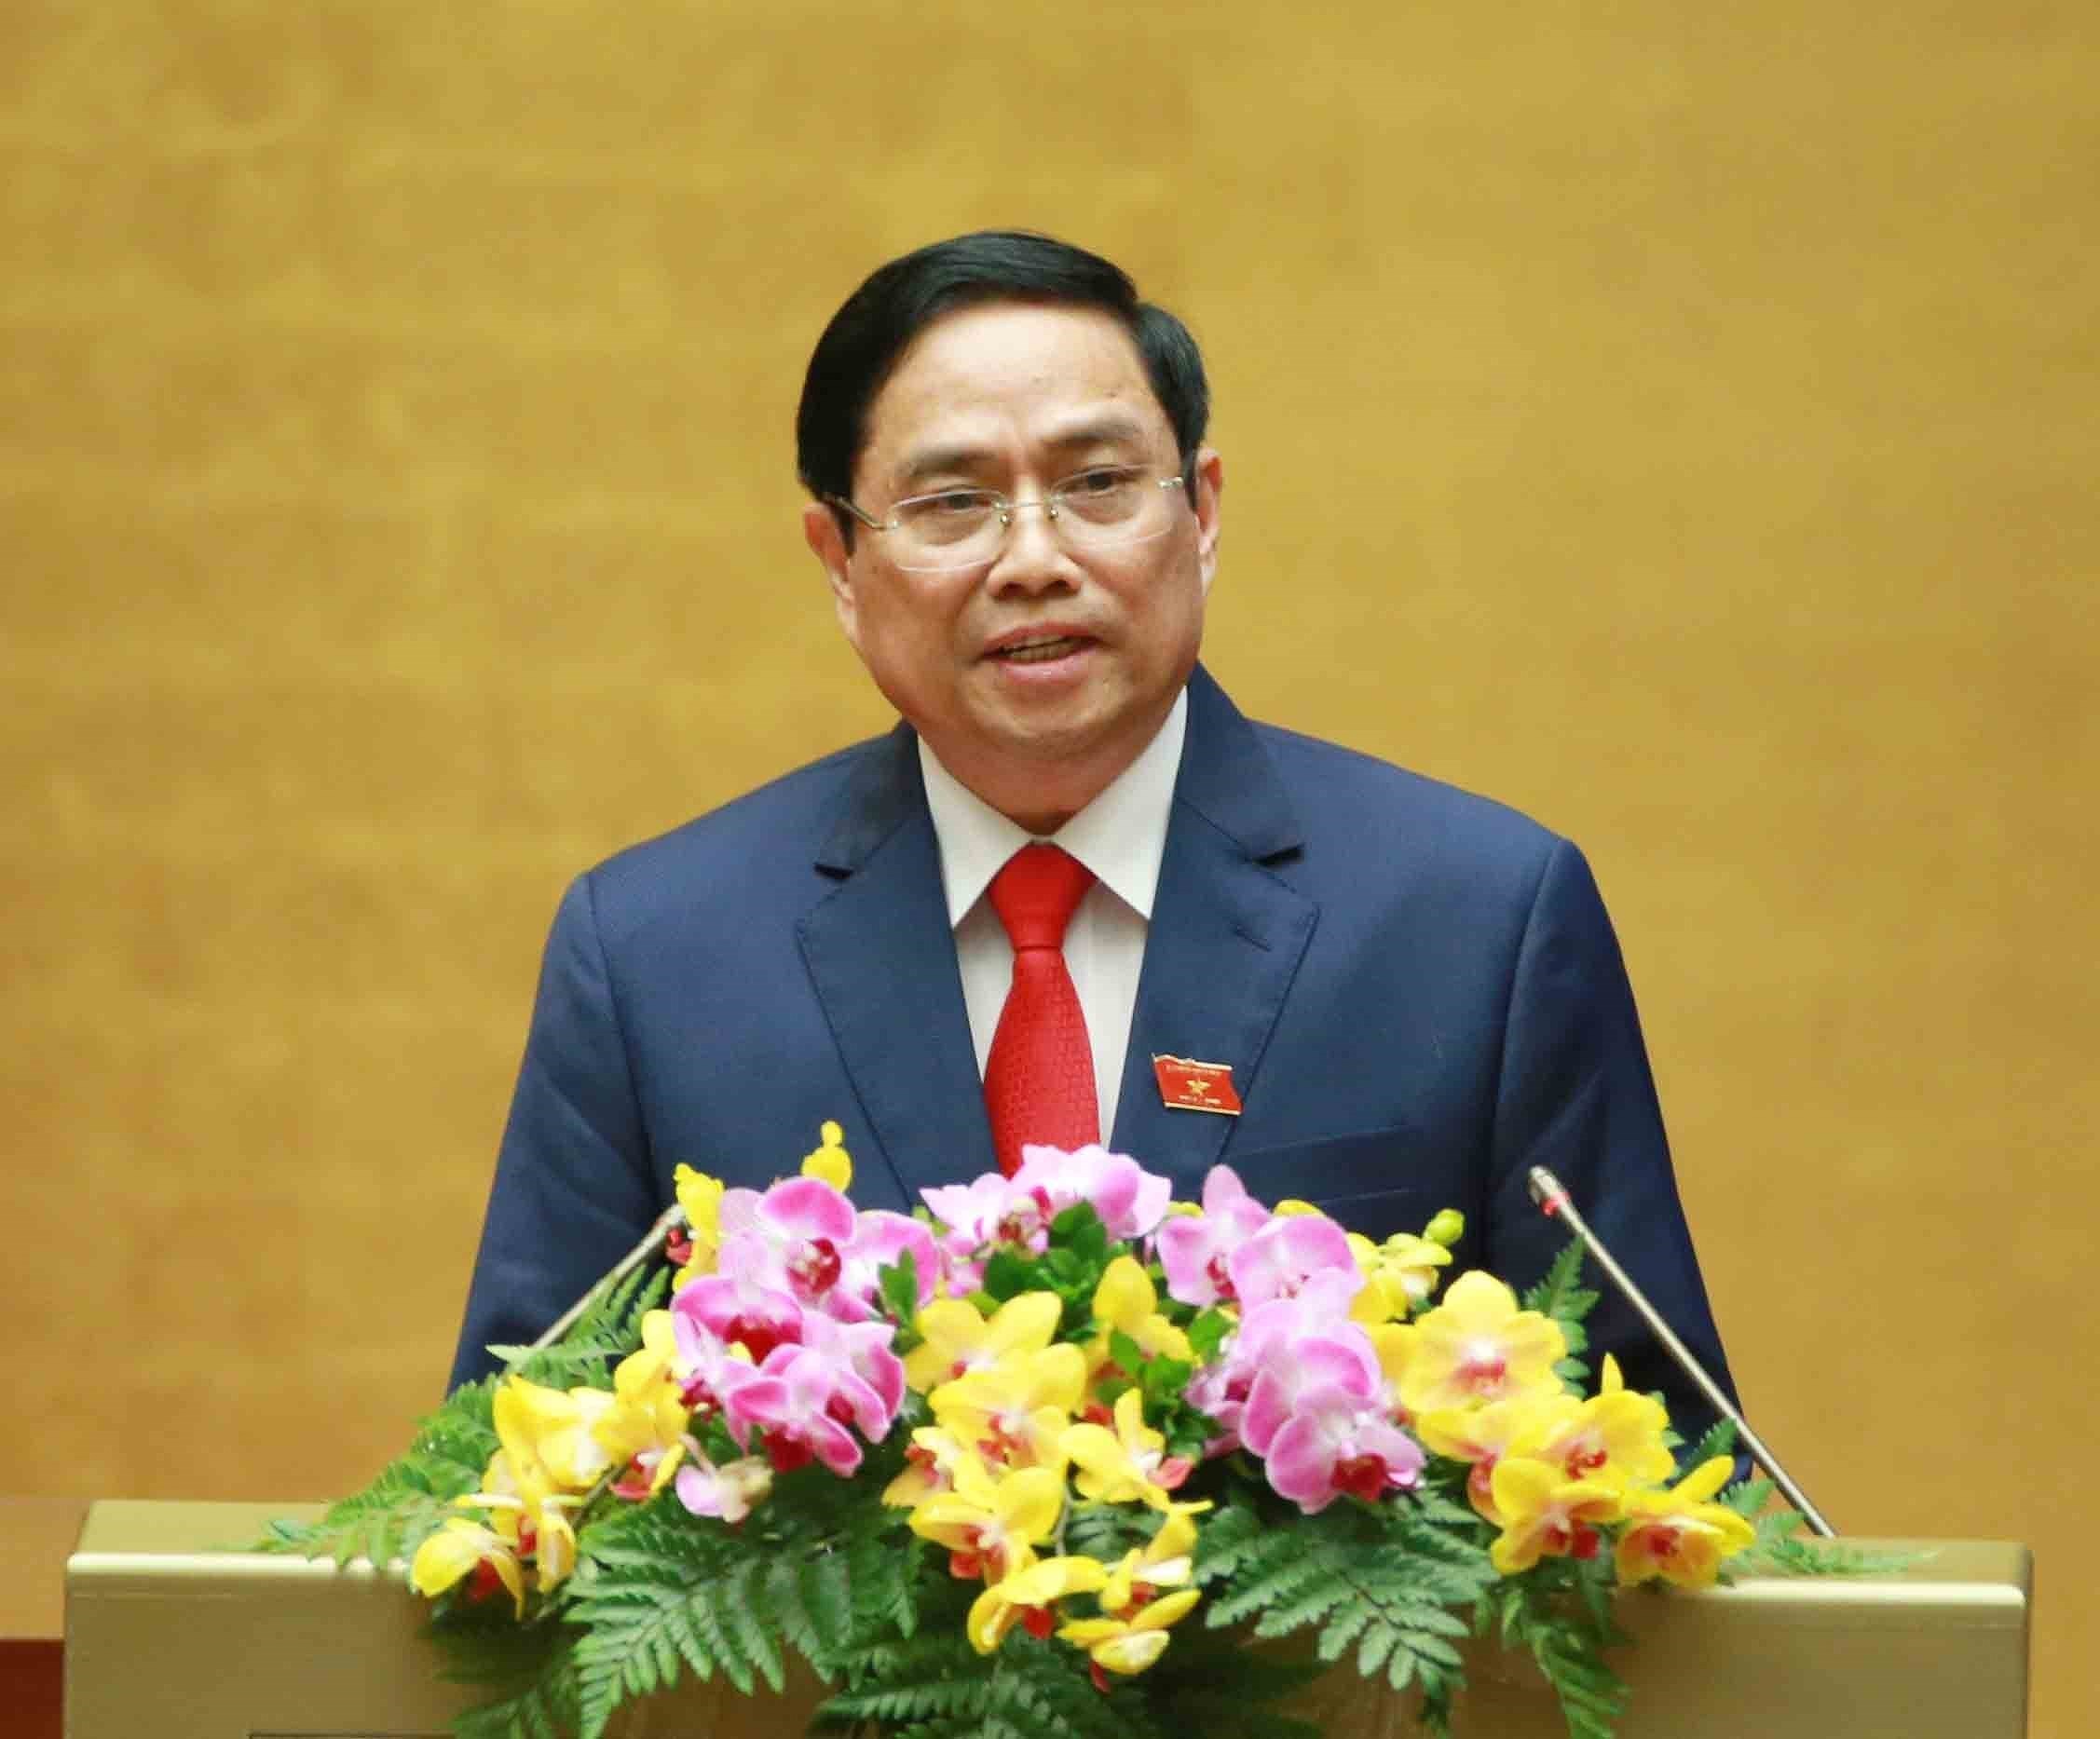 11-ая сессия Национального собрания 14-го созыва: Фам Минь Тьинь избран премьер-министром Вьетнама hinh anh 1